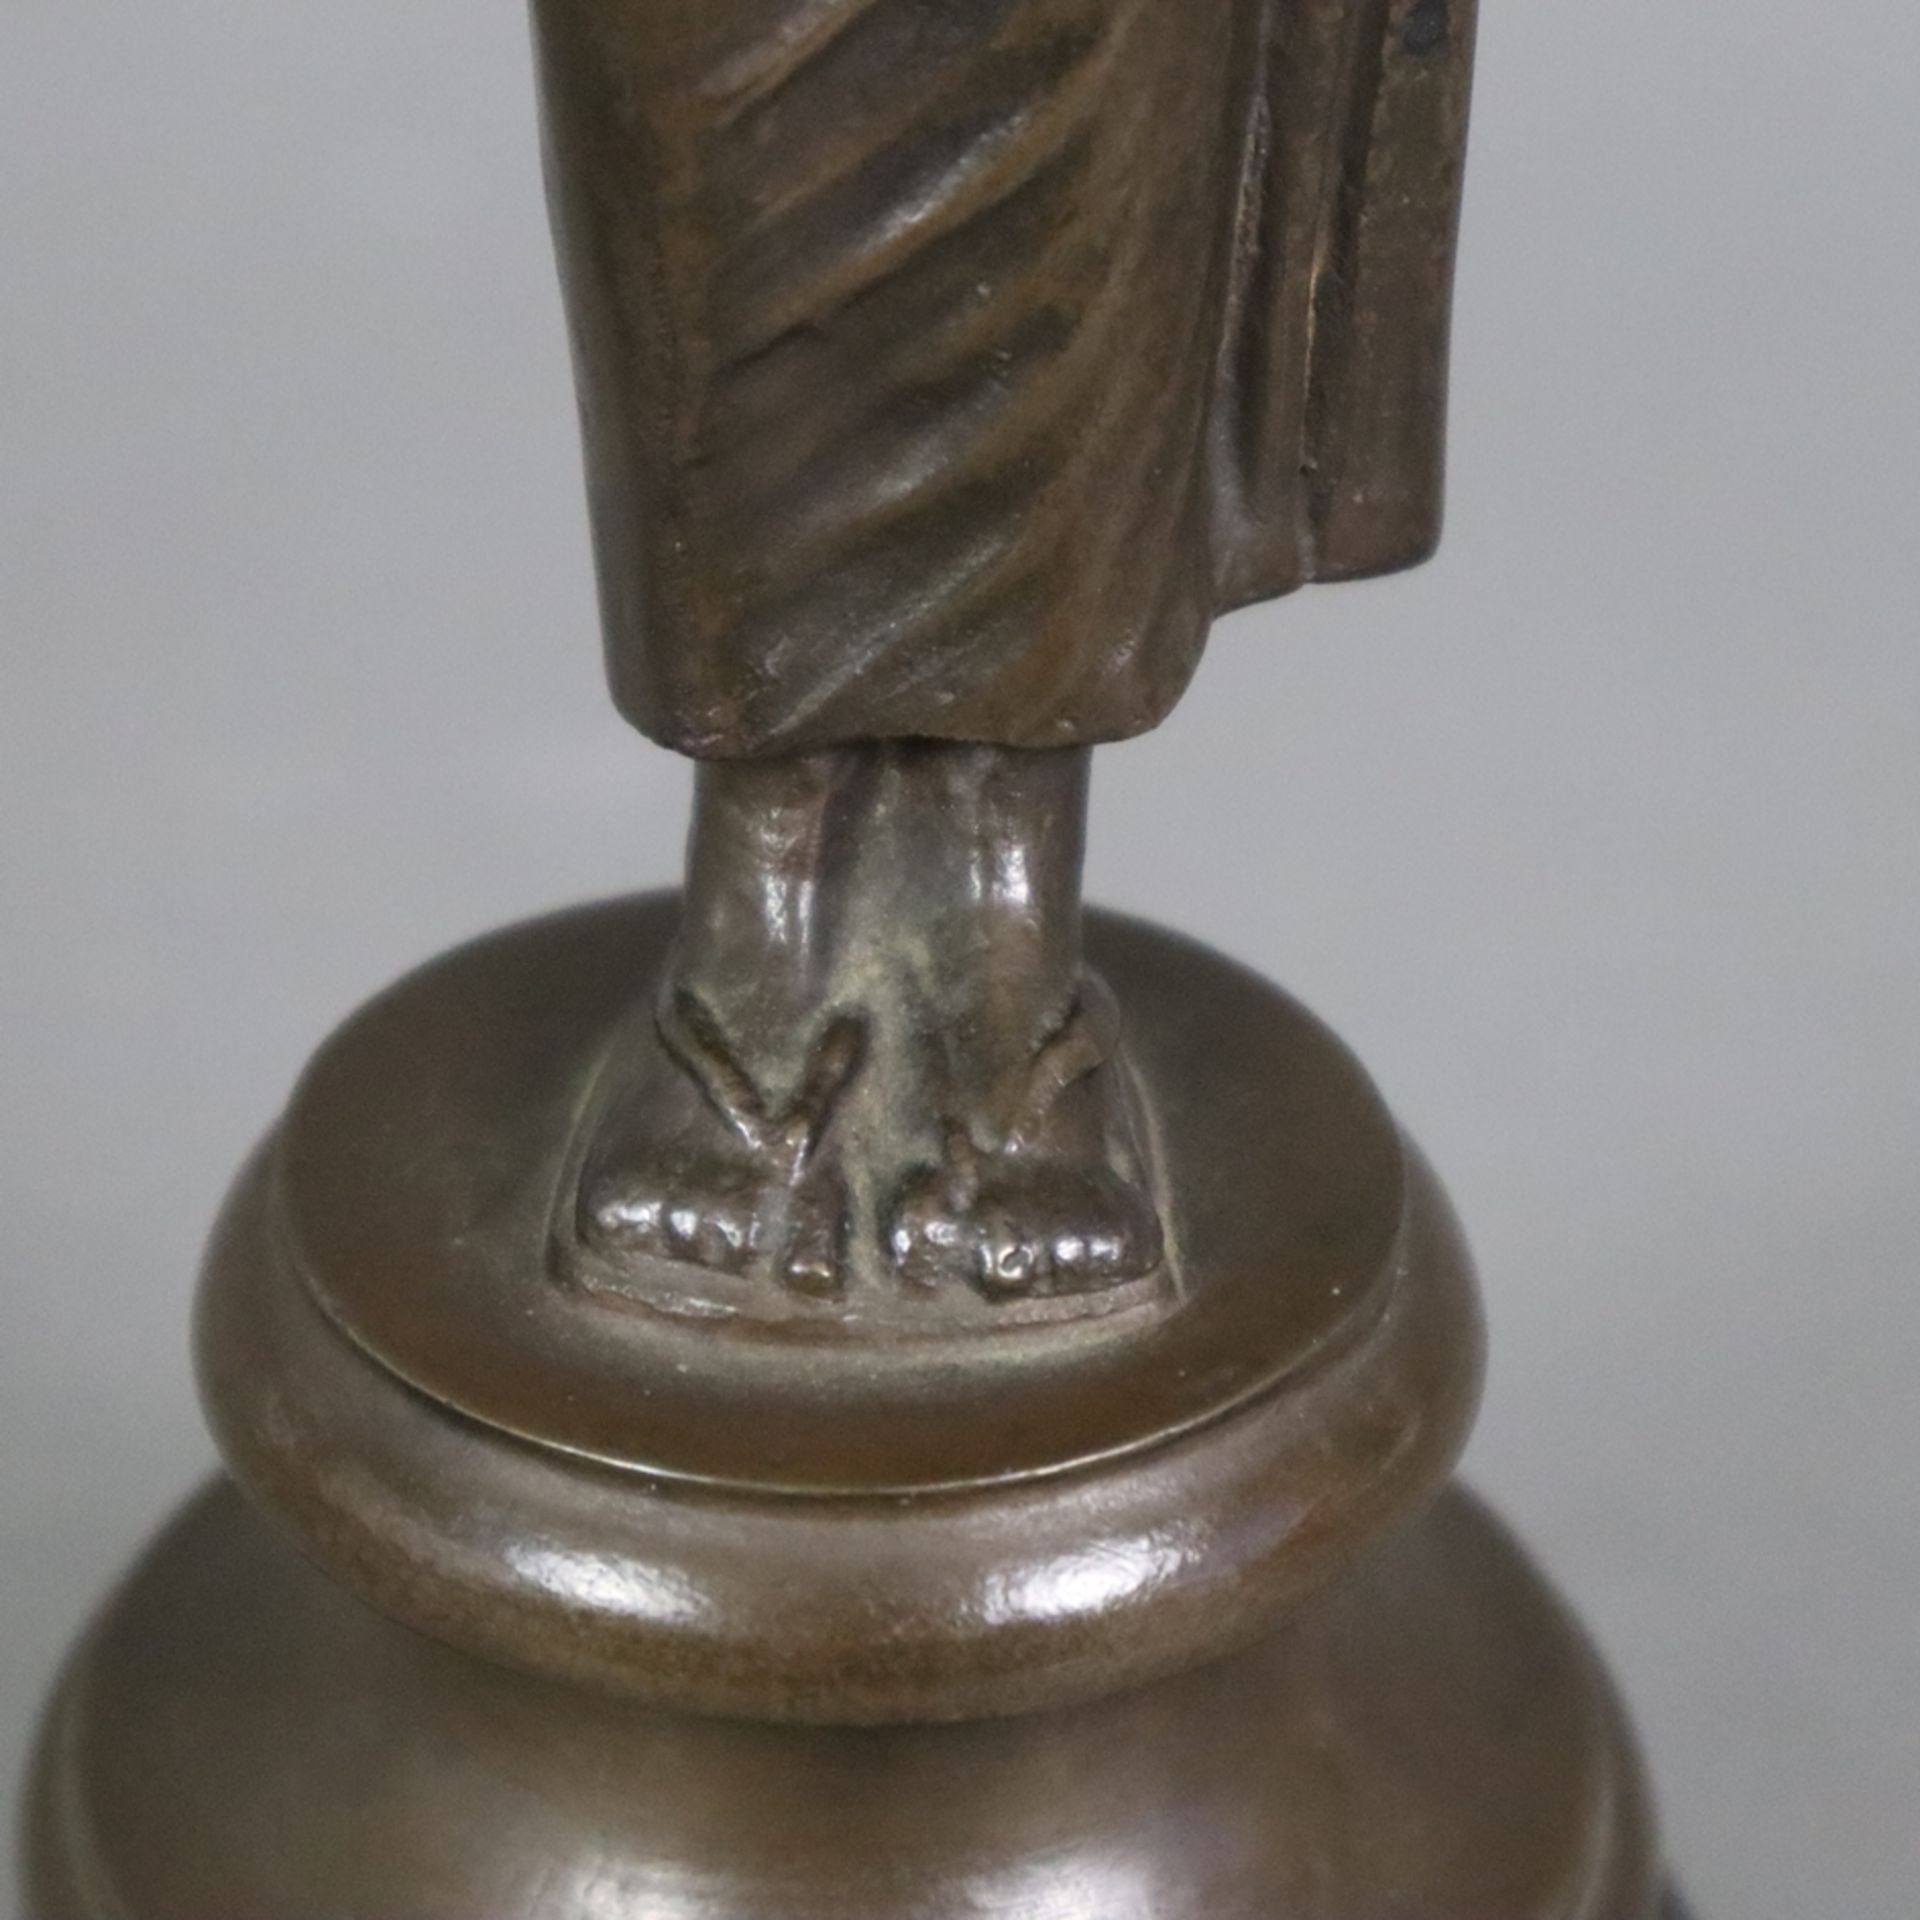 Figurine einer antiken Priesterin - Bronze, braun patiniert, antikisierende Frauenfigur mit Diadem, - Bild 6 aus 8